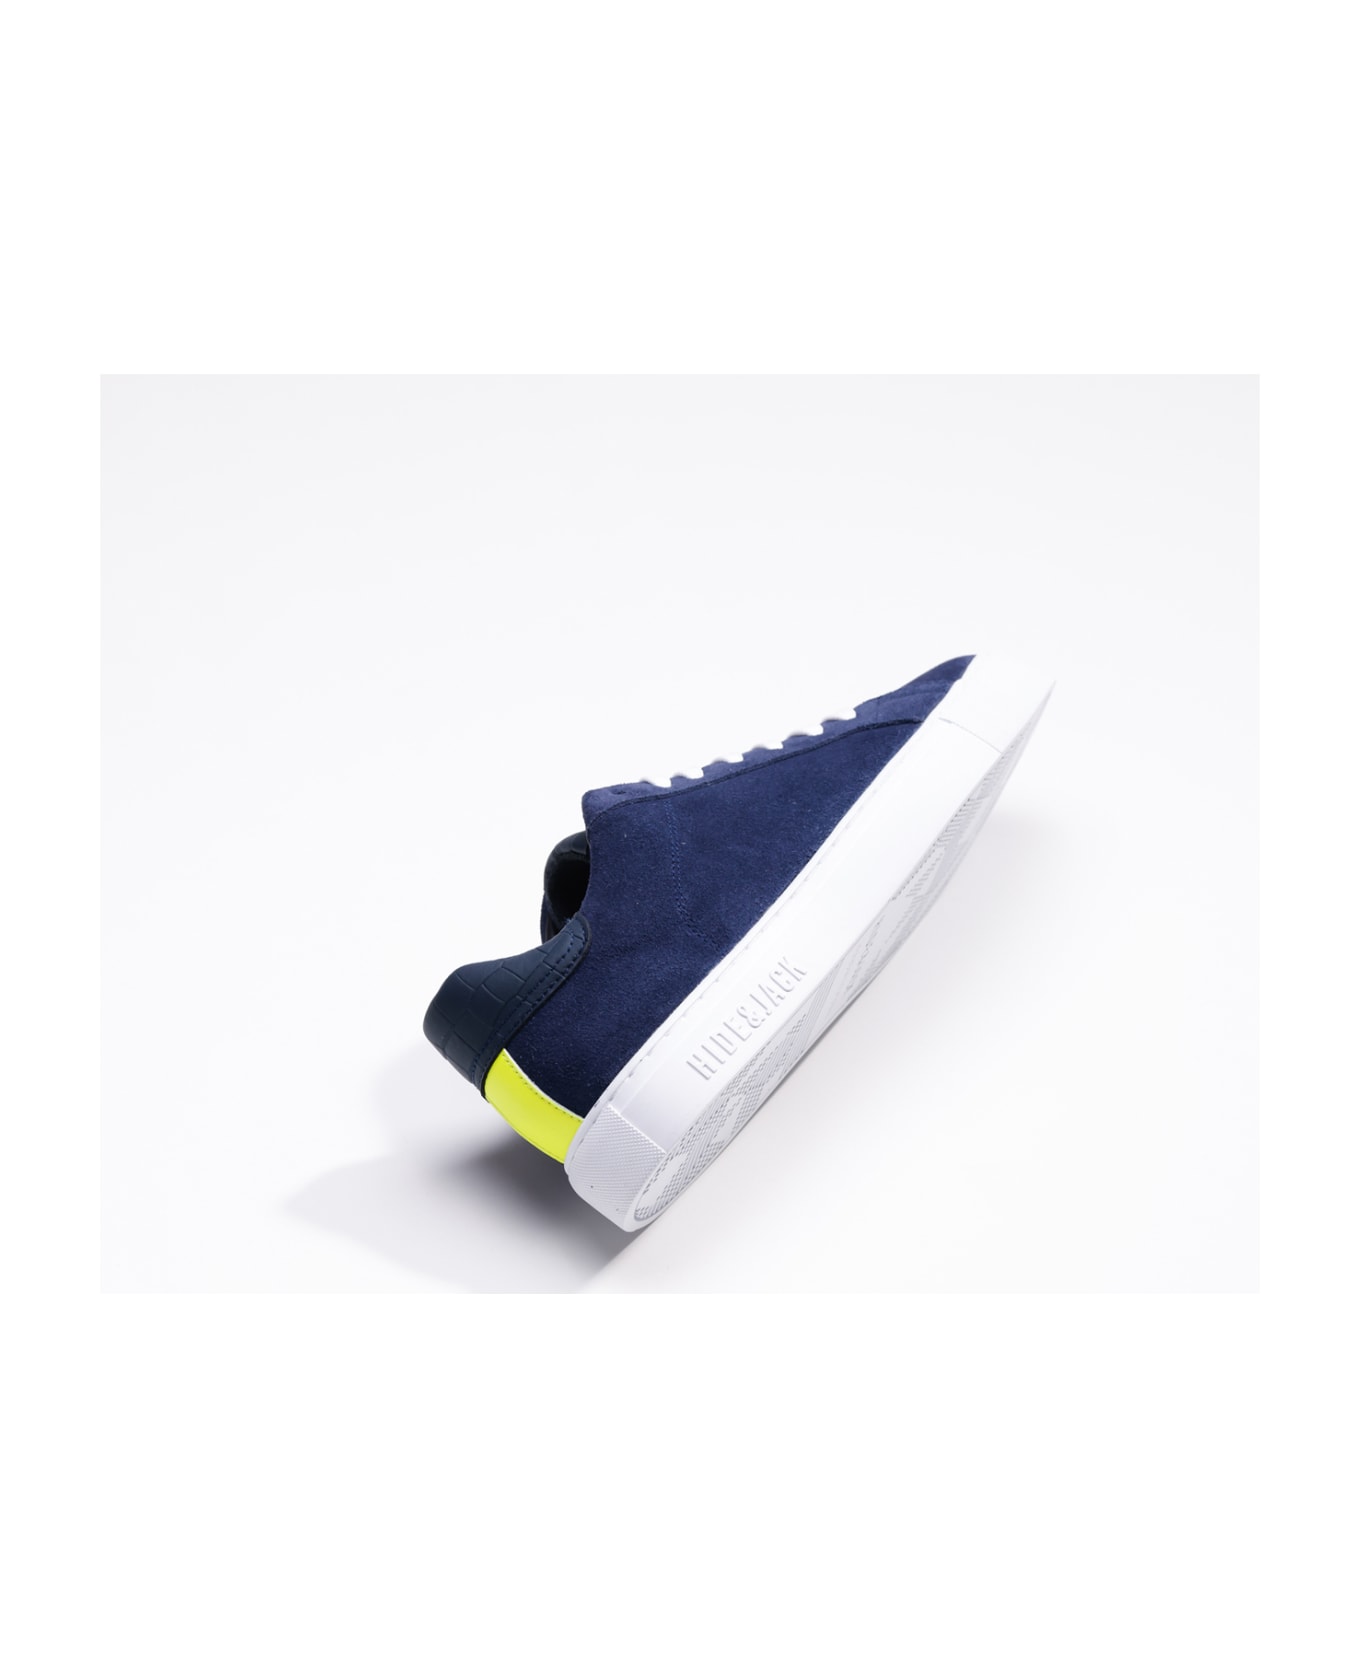 Hide&Jack Low Top Sneaker - Essence Oil Blue White